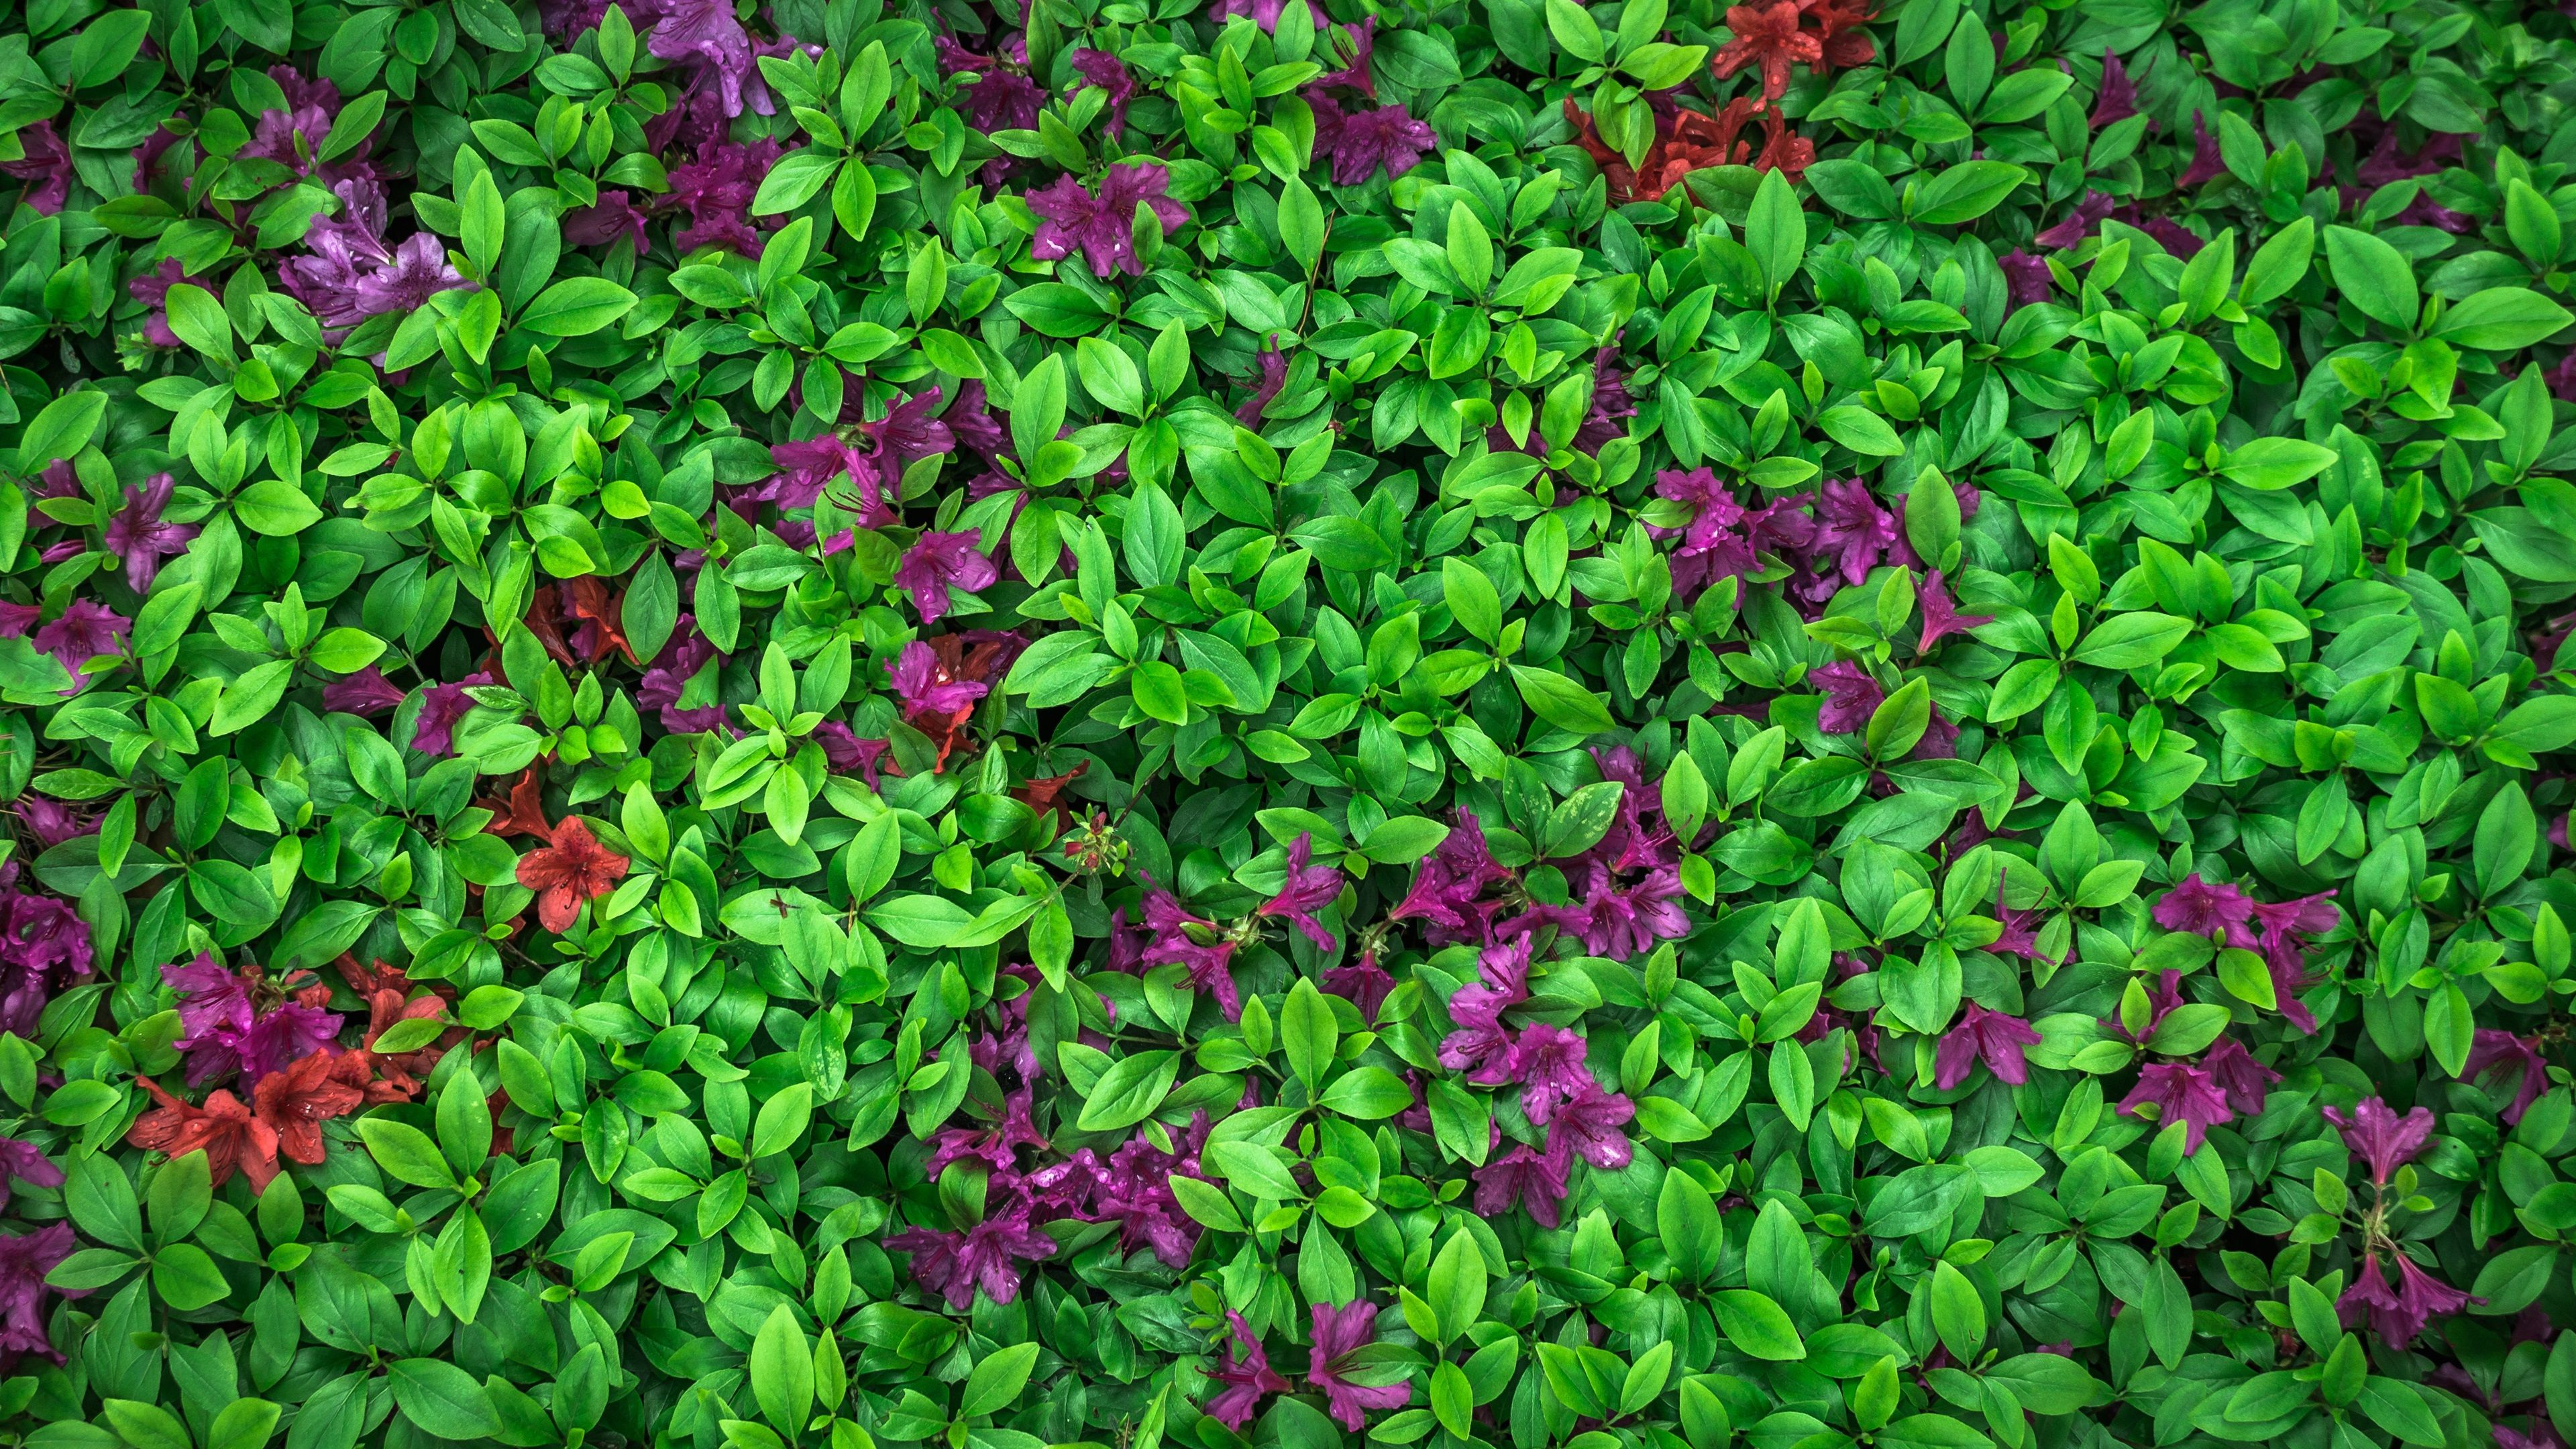 Wallpaper Azalea, green leaves, purple flowers 3840x2160 UHD 4K Picture, Image